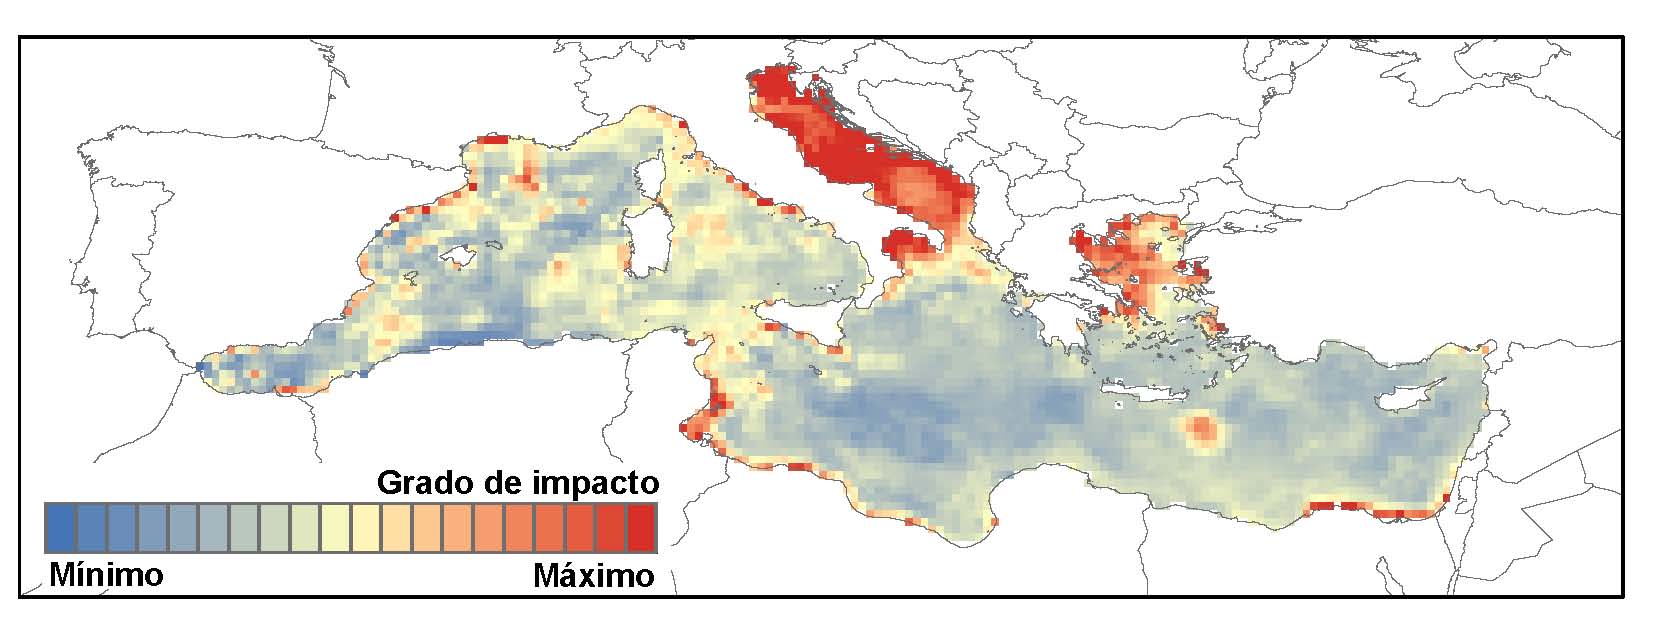 El mar Adriàtic, el mar Egeu, la costa africana o el mar de l’àrea catalana es troben entre les zones més afectades